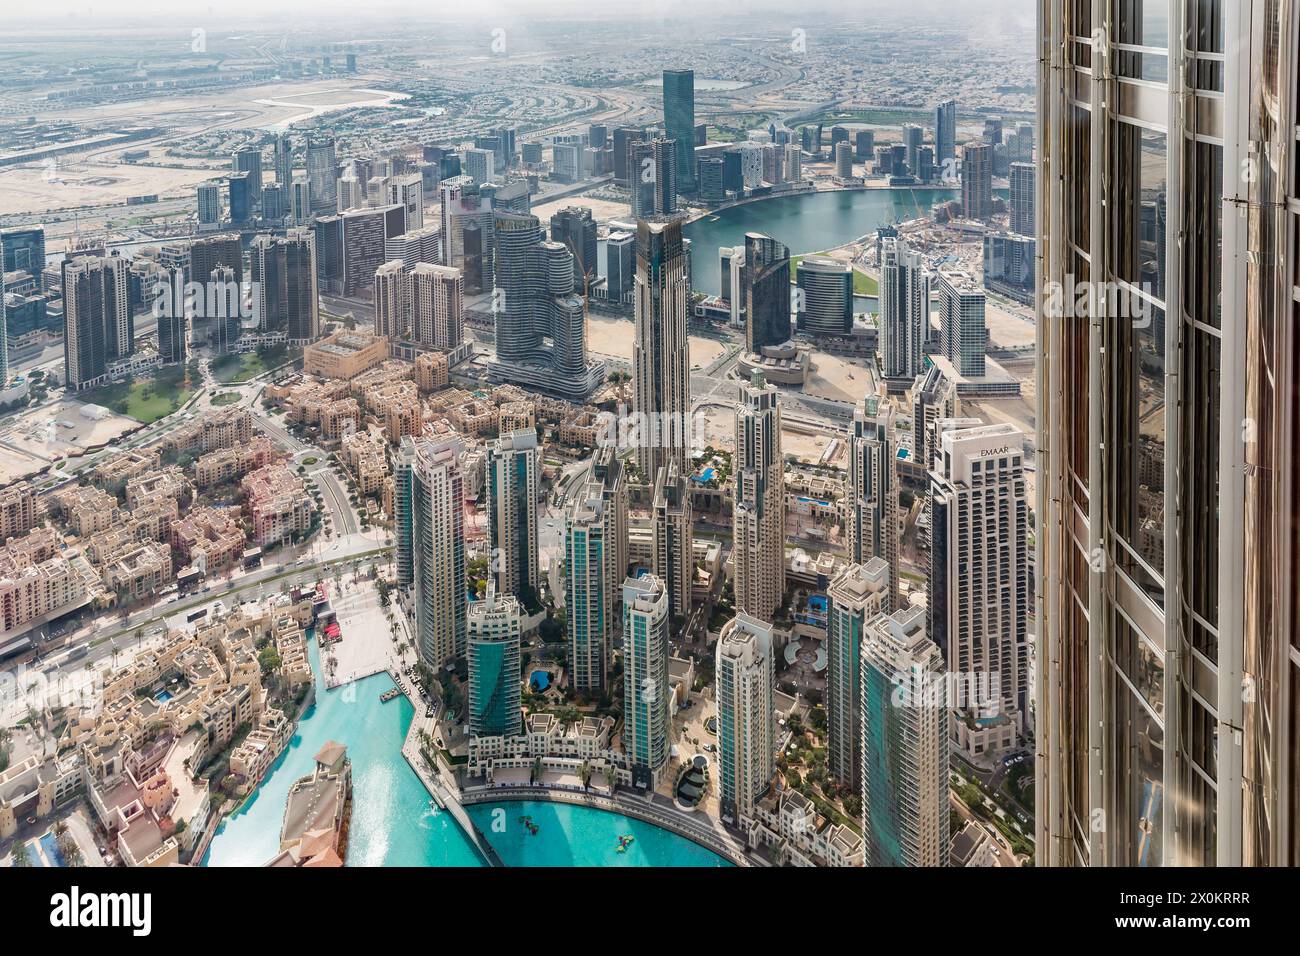 Vista dello skyline dalla piattaforma visitatori al 124° piano, ad un'altezza di 450 m, Burj Khalifa, l'edificio più alto del mondo, alto 830 m, grattacielo, skyline, Dubai, Emirati Arabi Uniti, Medio Oriente, Asia Foto Stock